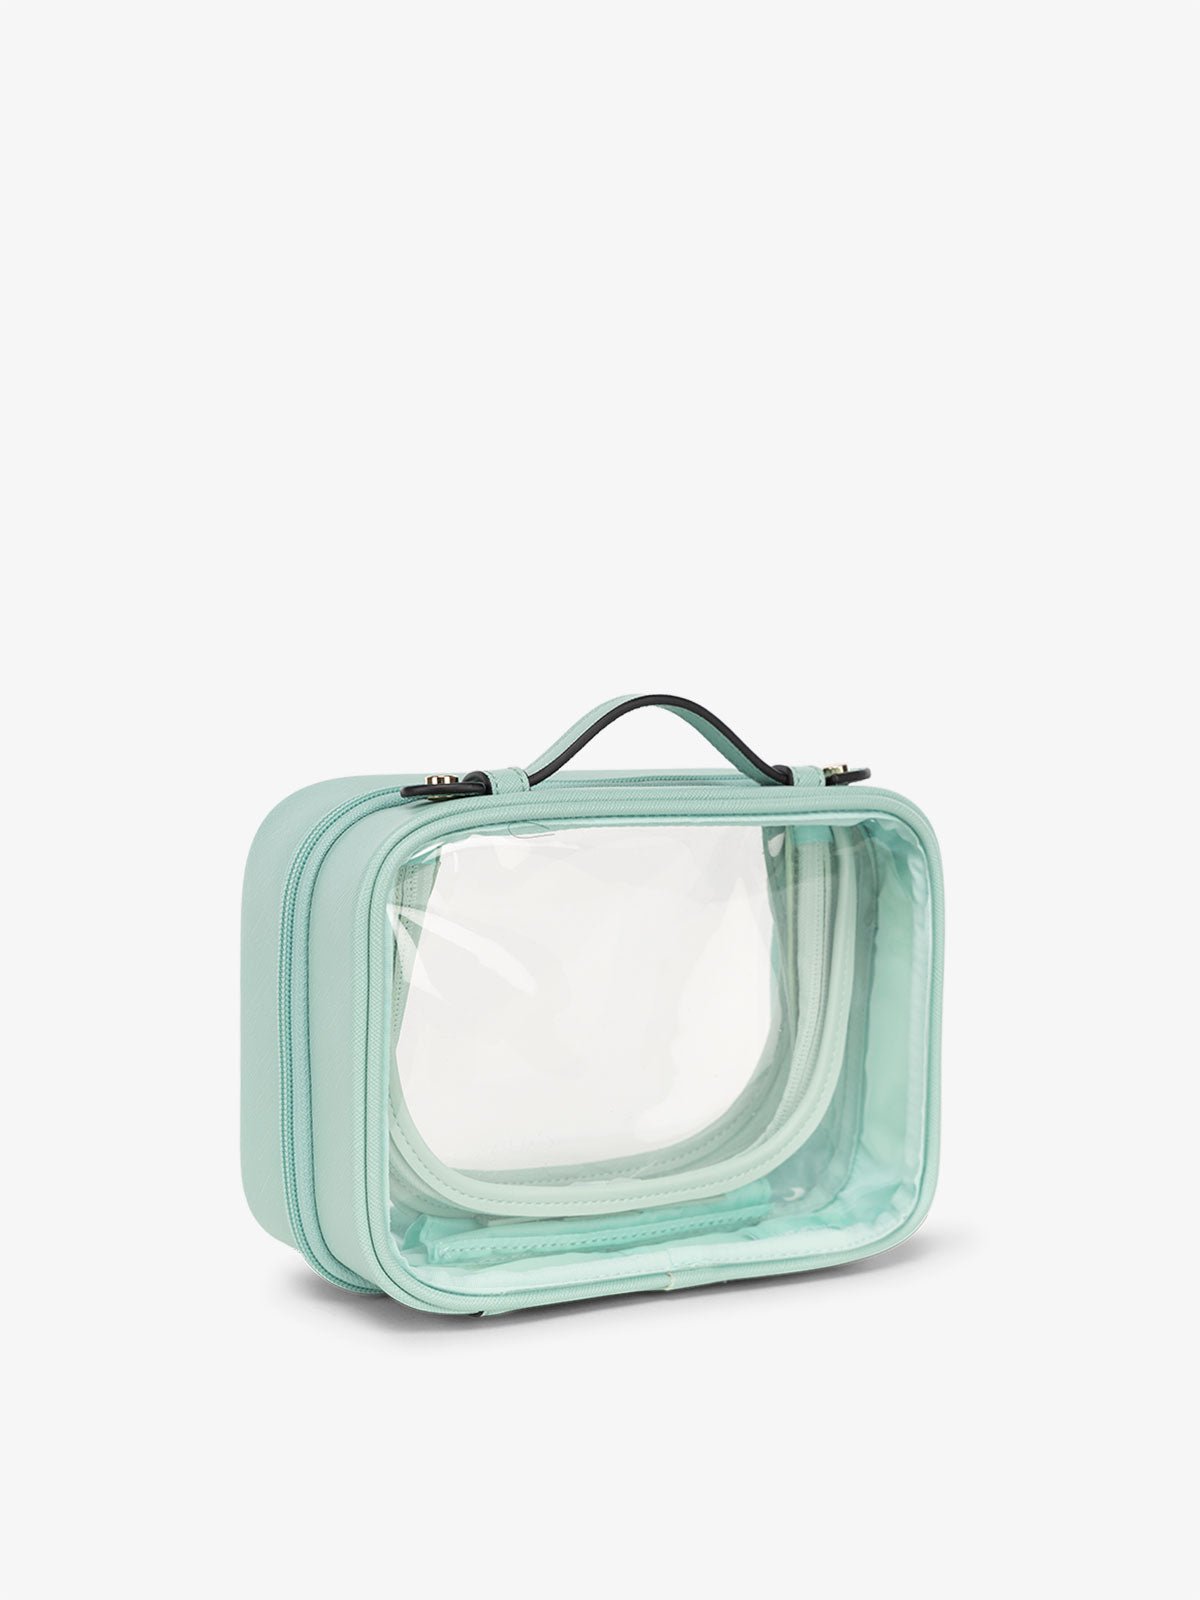 CALPAK water resistant clear makeup bag for women in aqua blue